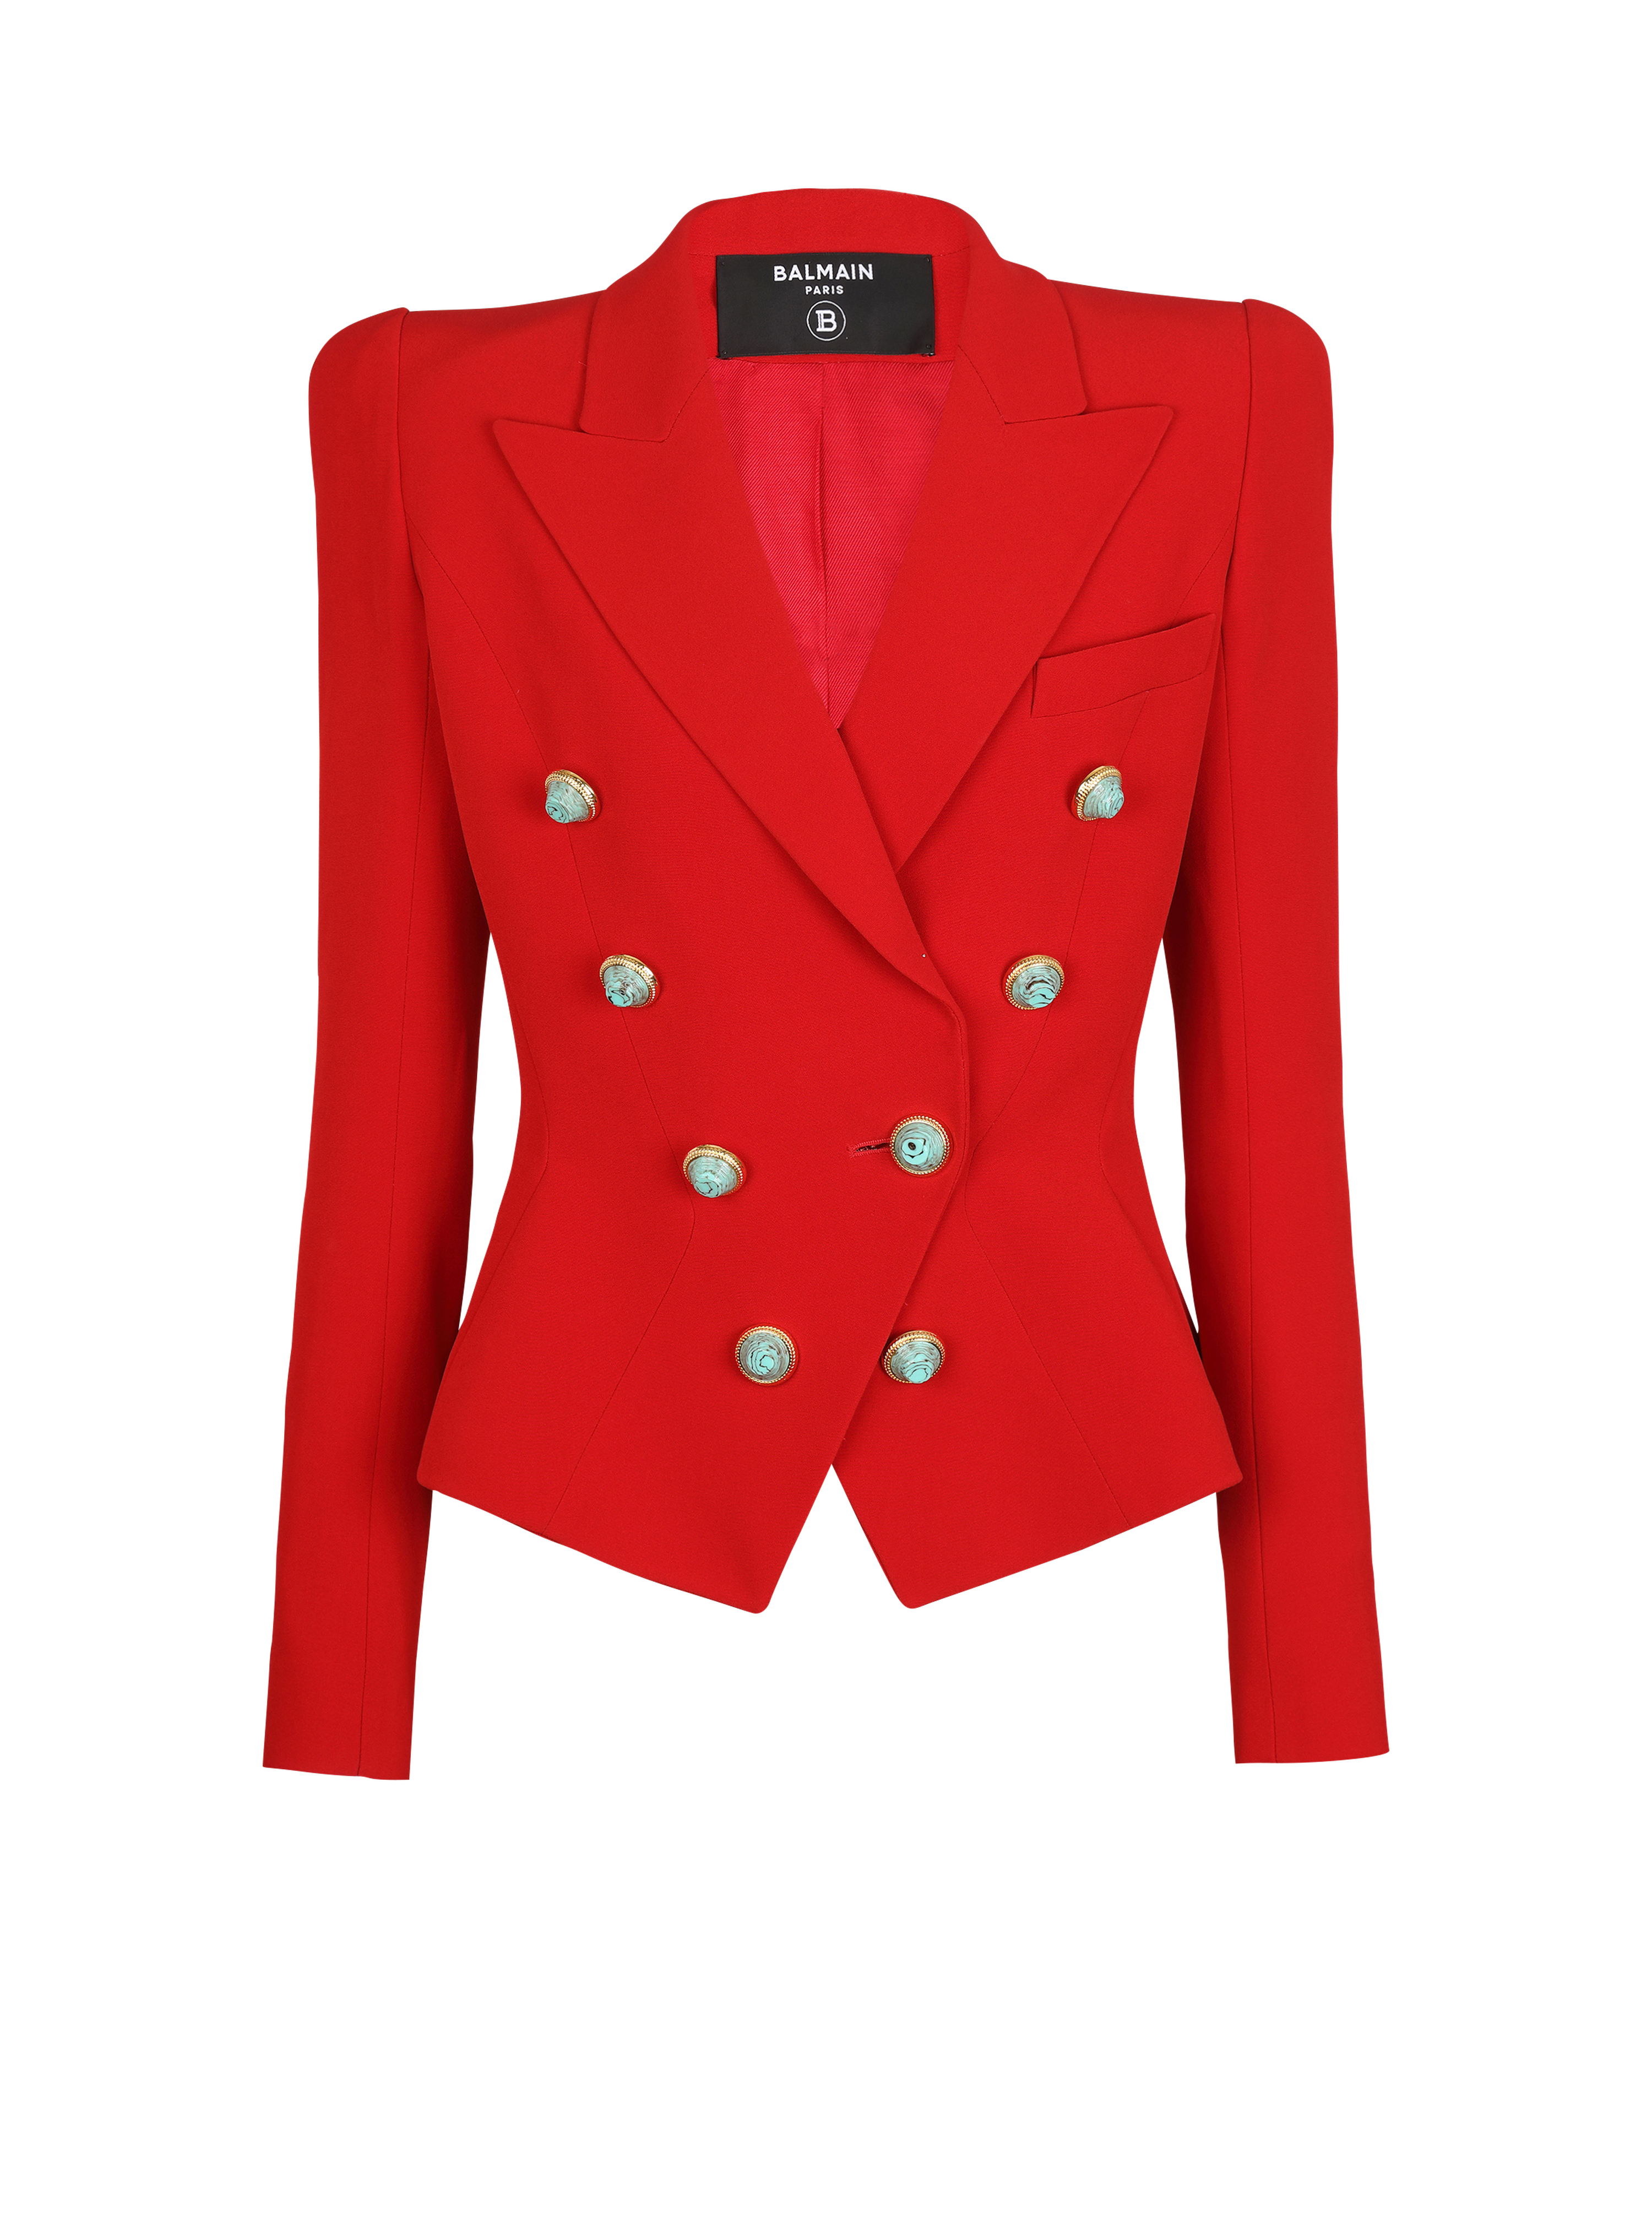 Slim-fit crepe jacket, red